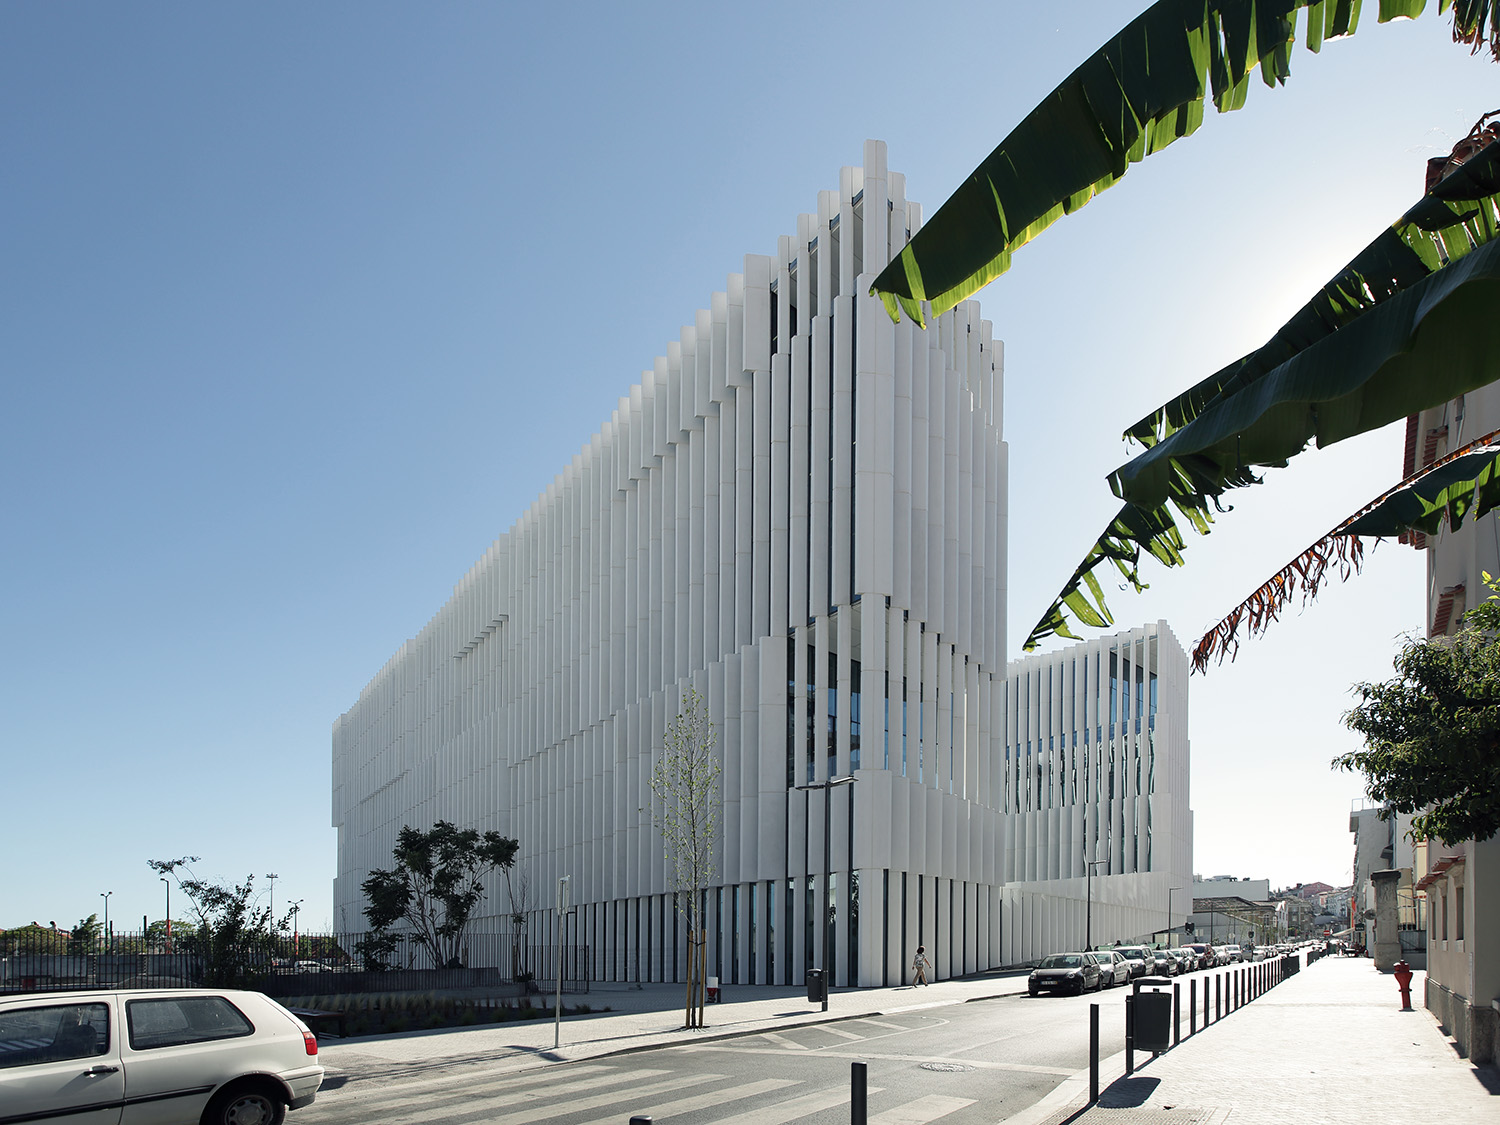 EDP headquarters
Aires Mateus, 2015
Lisbon, Portugal